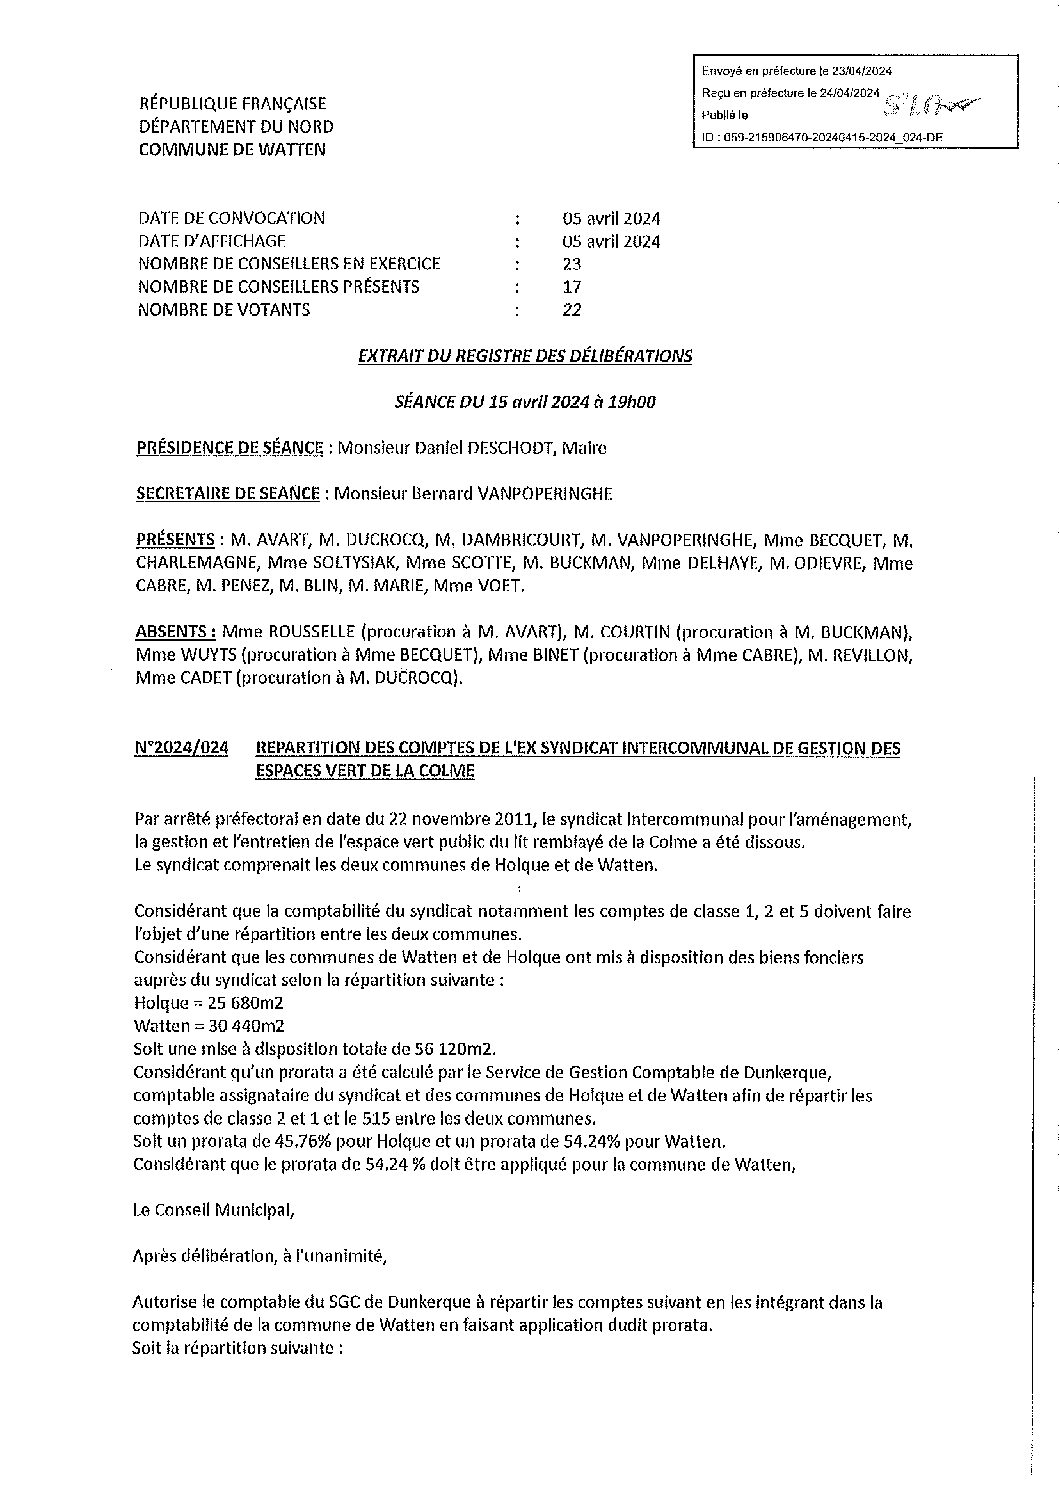 2024-024 Répartition comptes ex-syndicat intercommunal espaces verts de la Colme